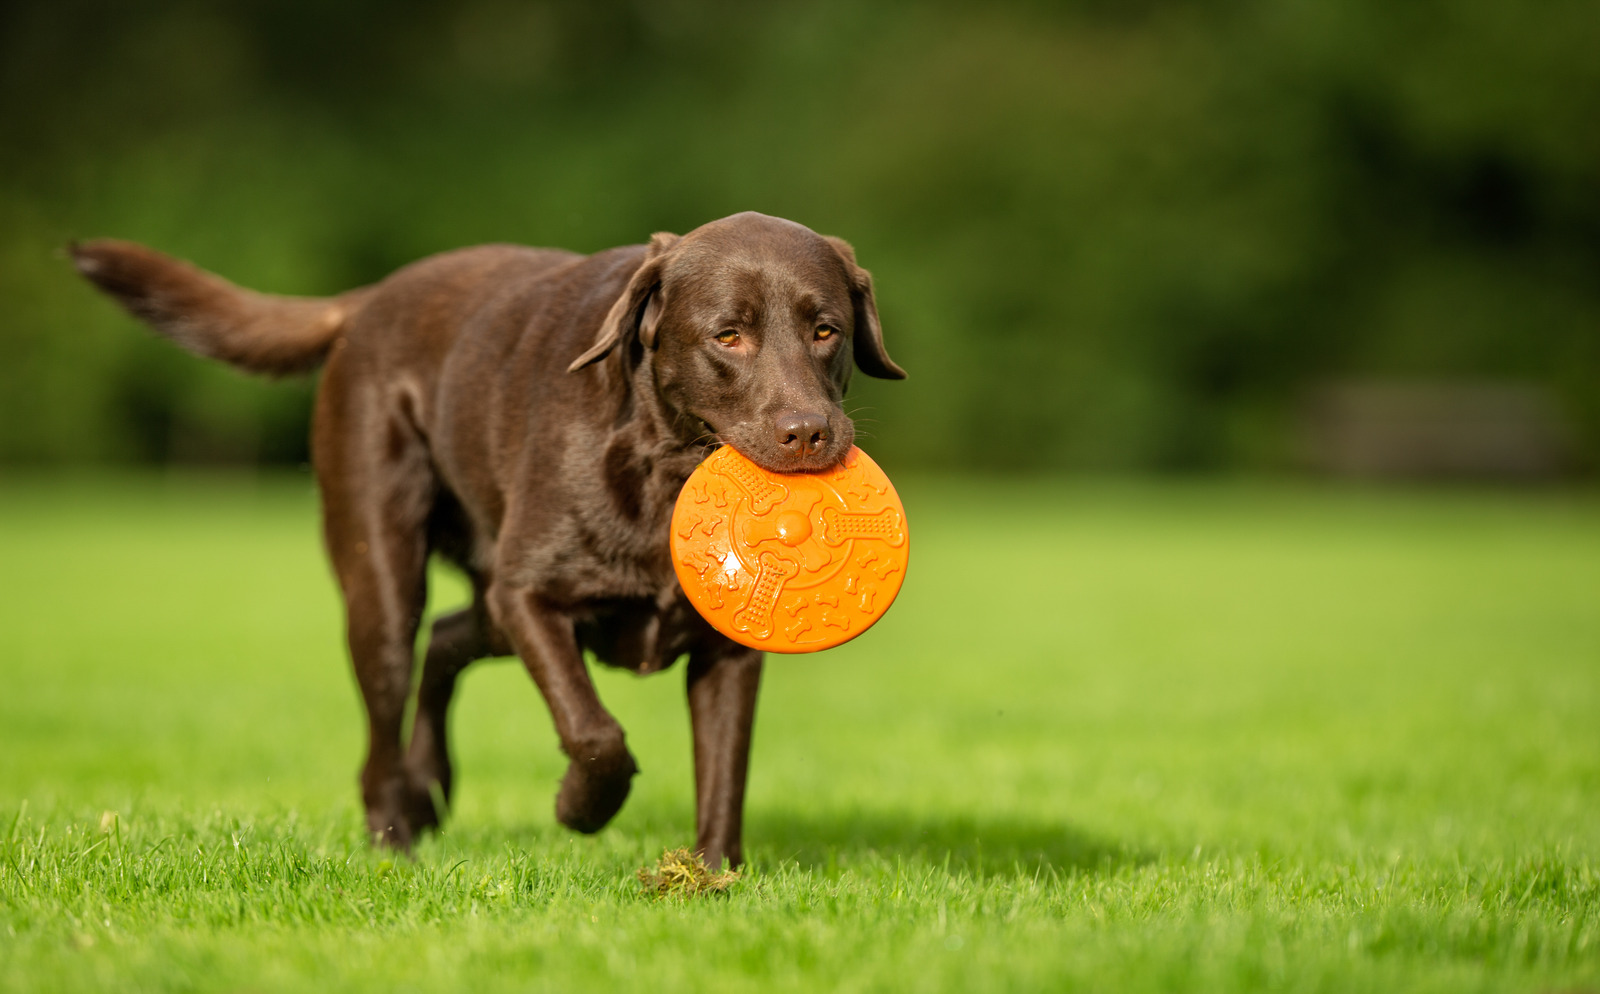 Bruine labrador loopt door gras met oranje frisbee in zijn mond